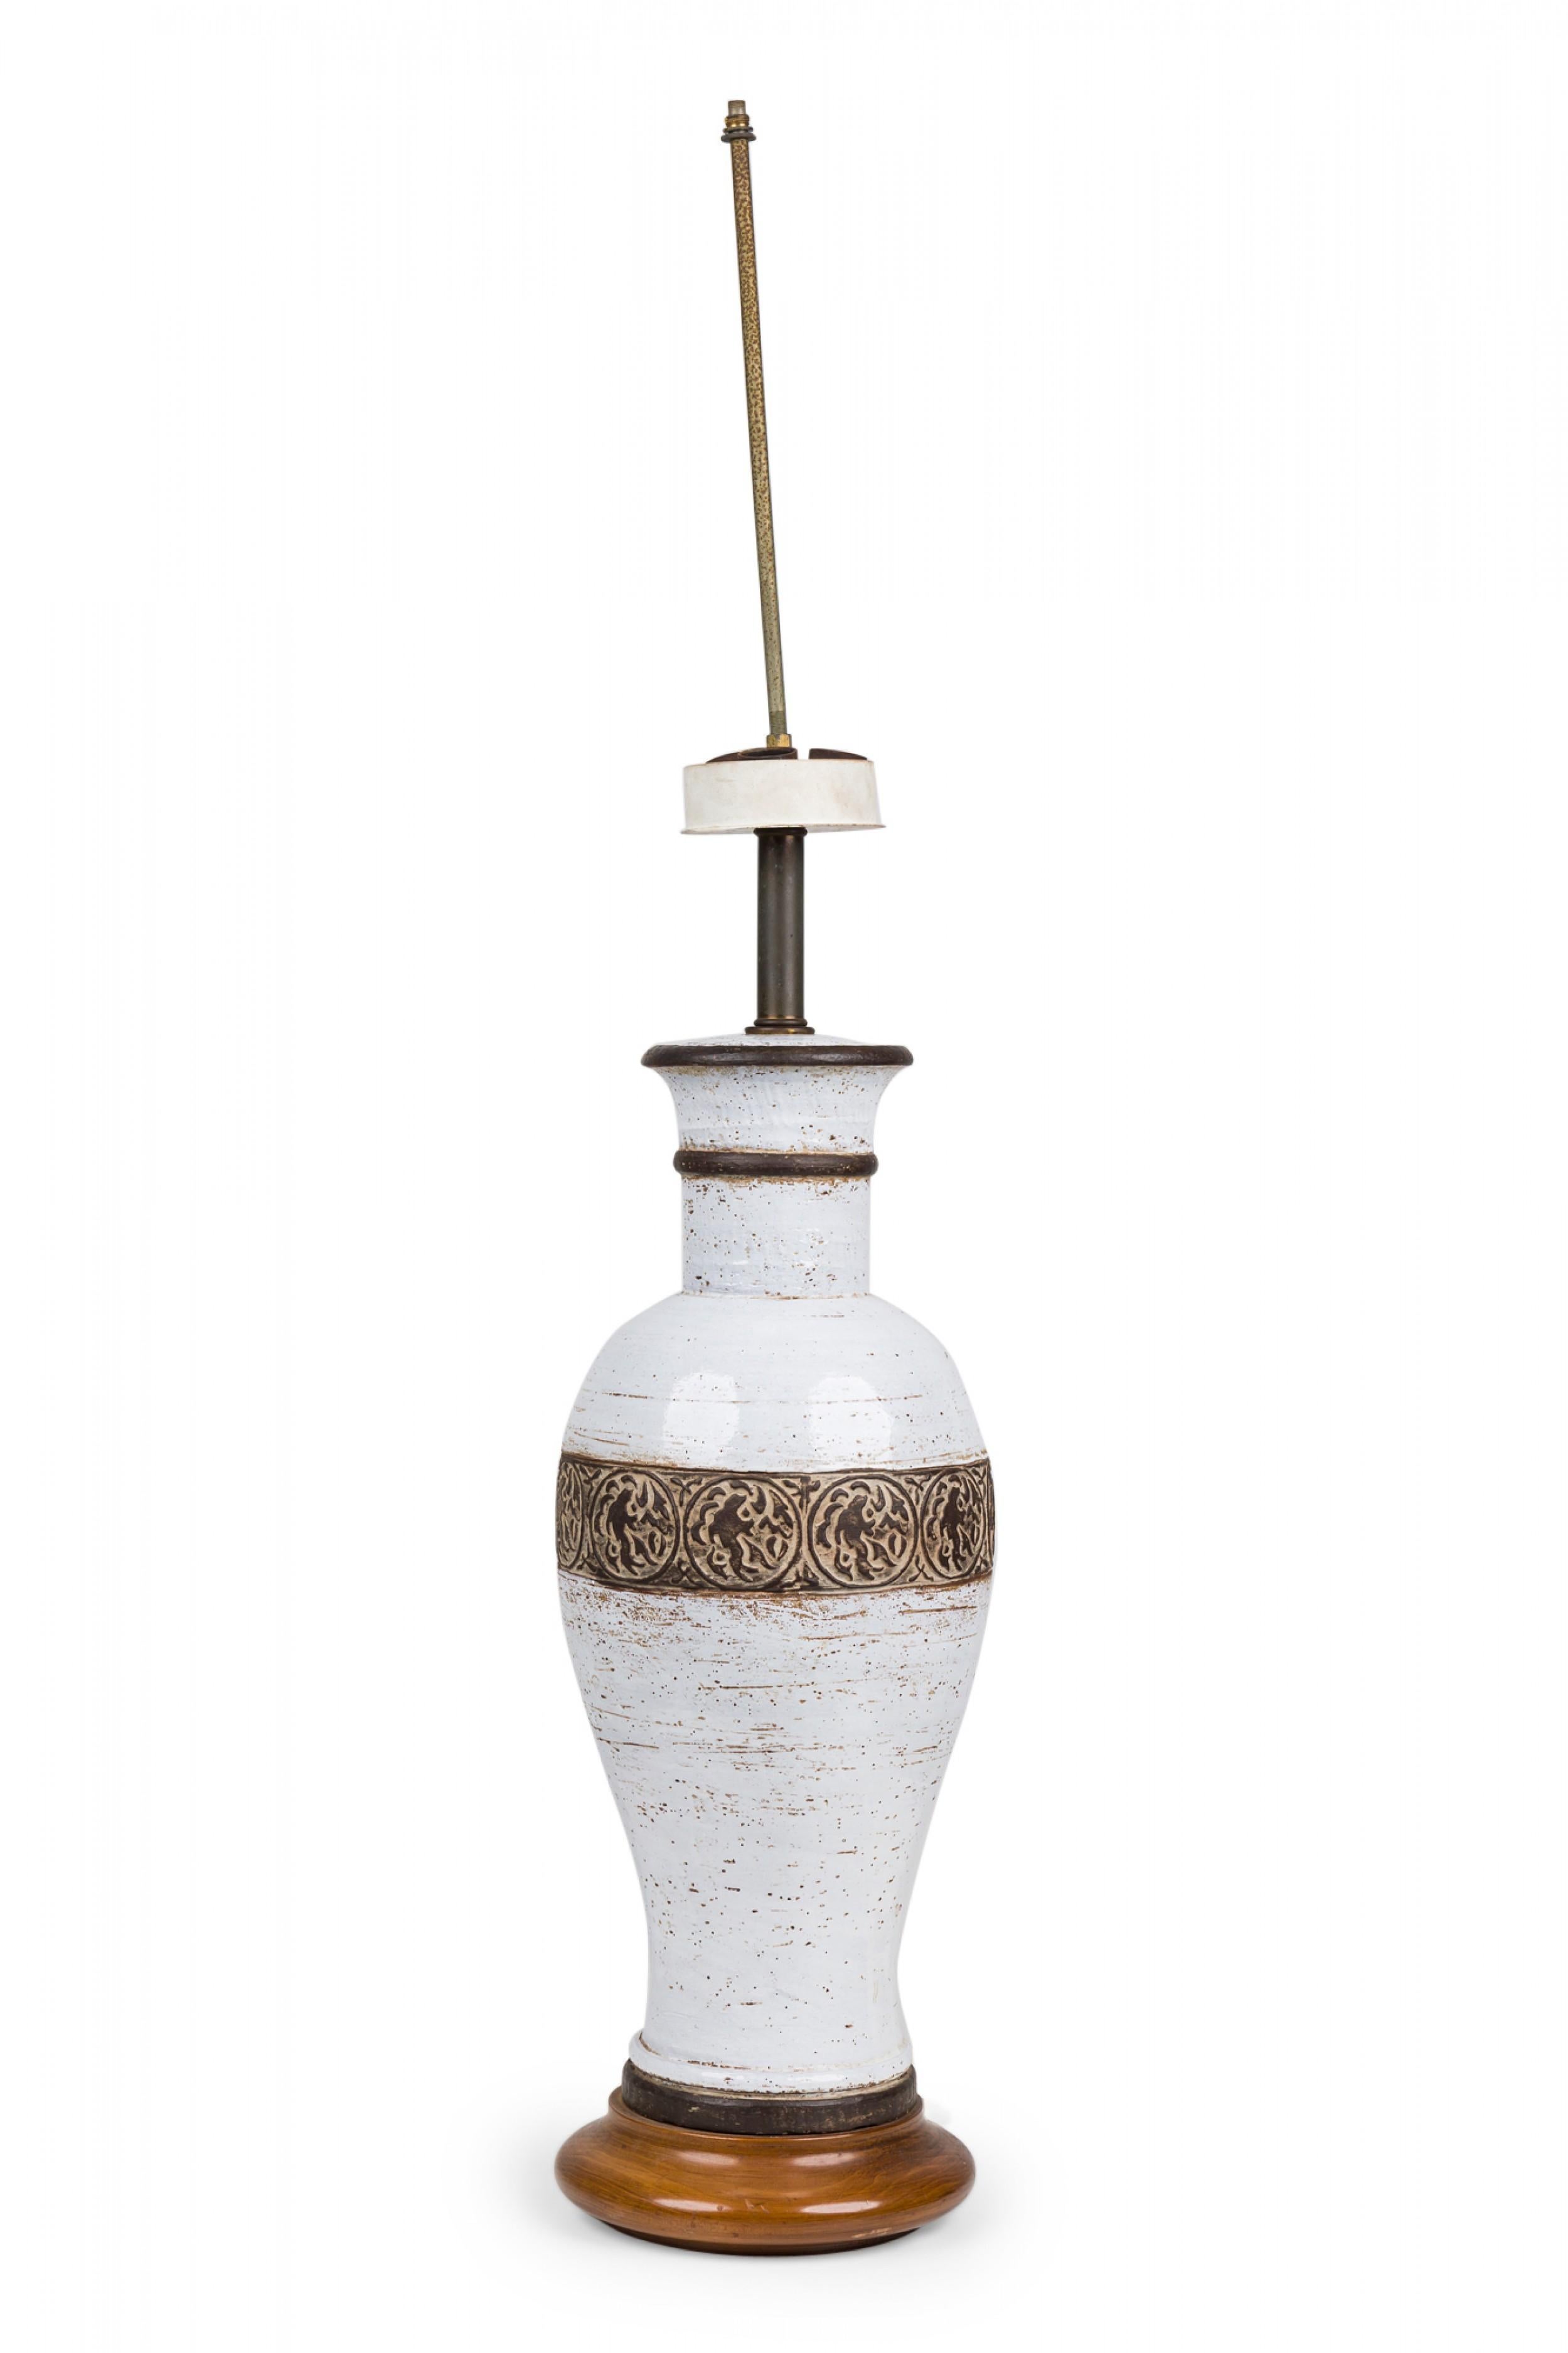 Ugo Zaccagnini Italian Ceramic White Glazed Urn Table Lamp on Light Wood Base For Sale 1